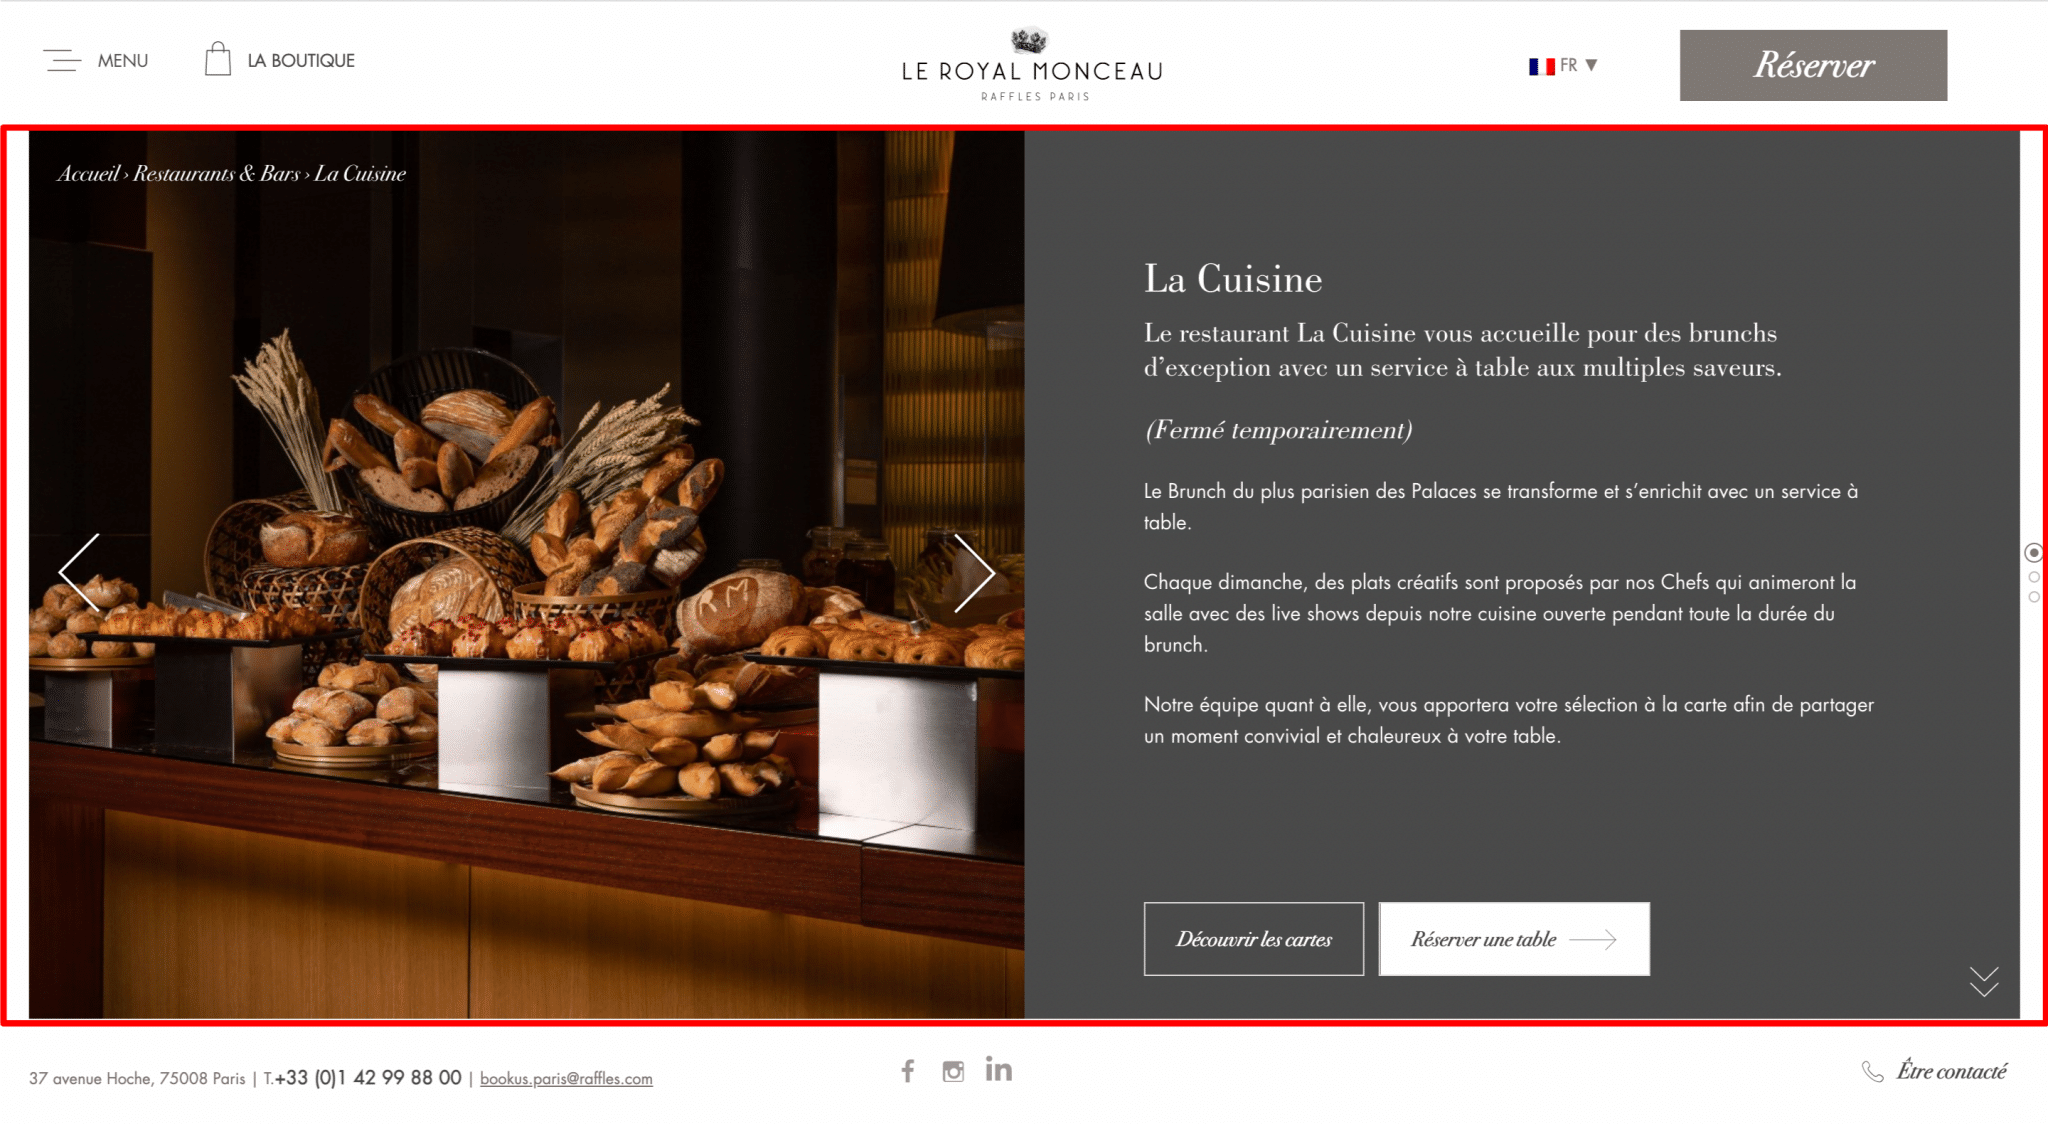 Exemple d’un slider sur le site Le Royal Monceau, créé avec WordPress.